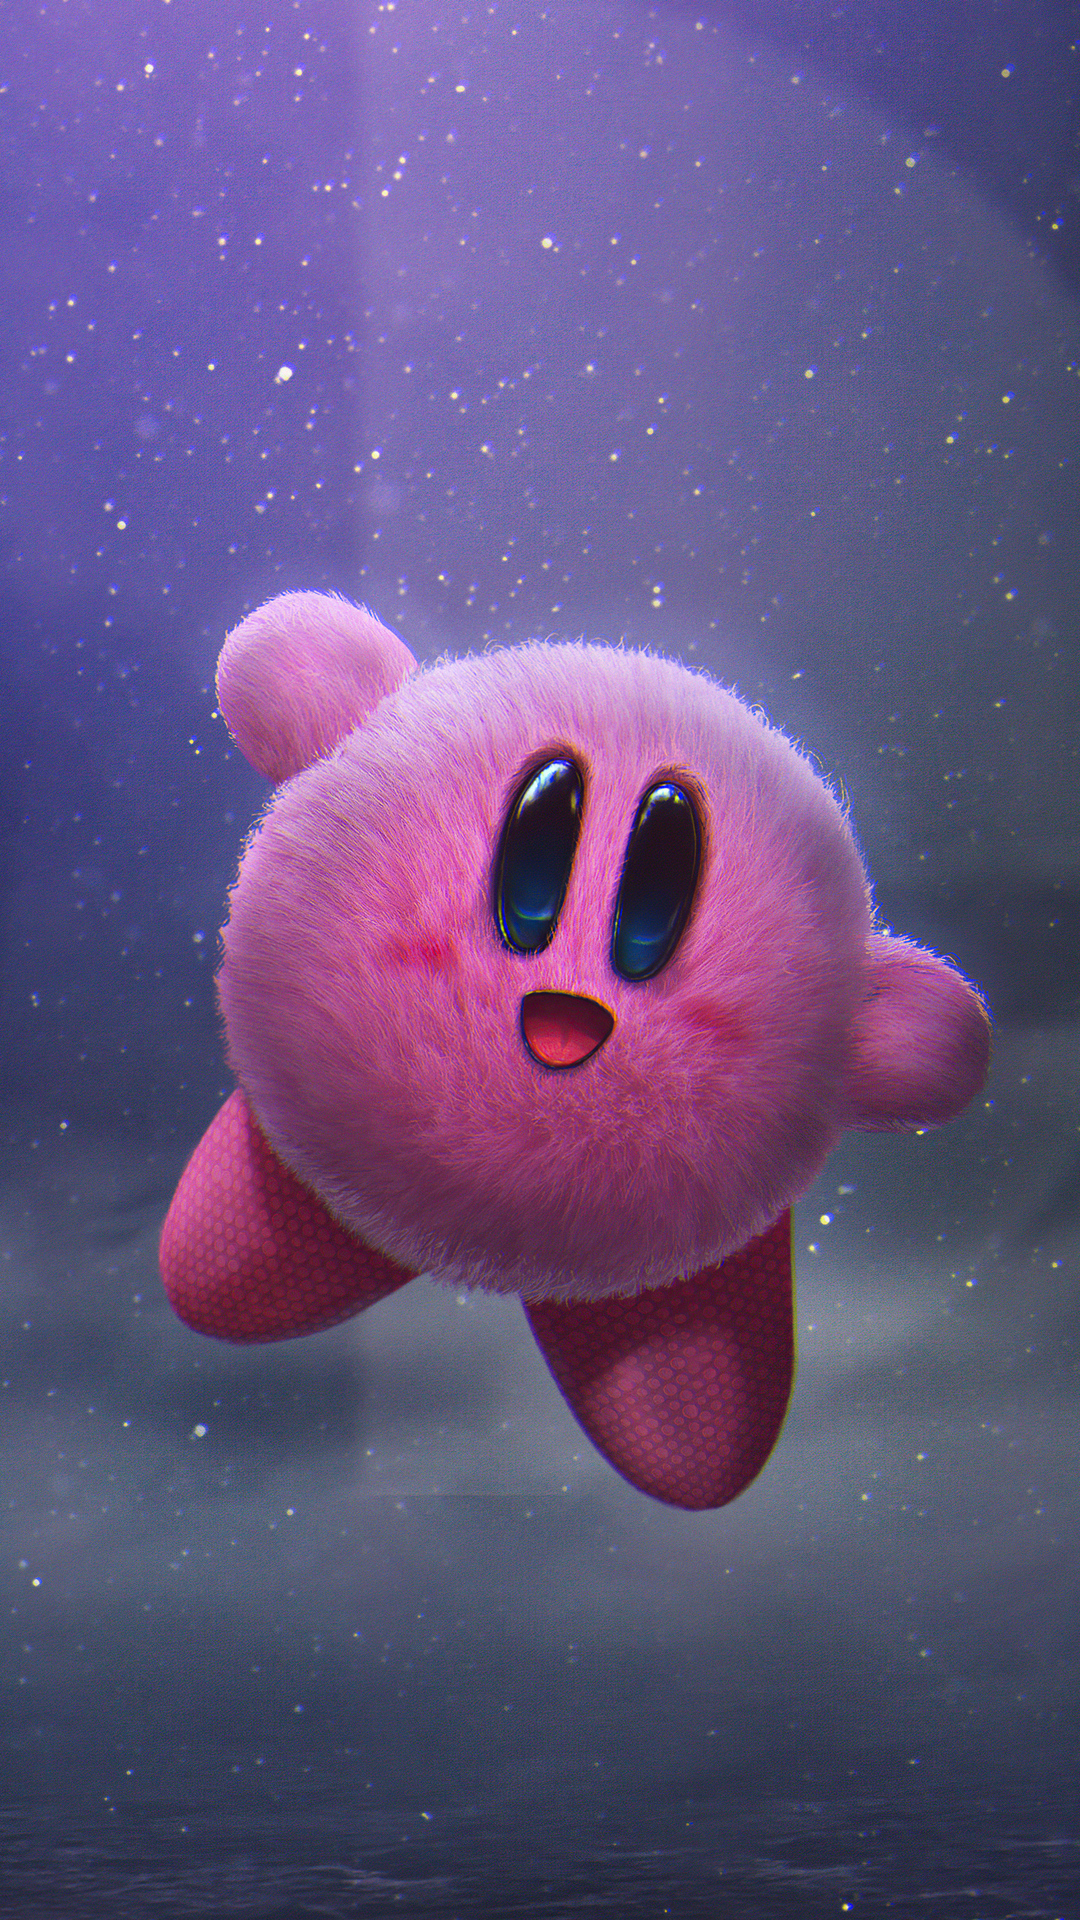 Bạn đang tìm kiếm một hình nền thú vị về Kirby cho điện thoại? Chắc hẳn hình ảnh này sẽ là một trong những lựa chọn tốt nhất cho bạn. Với độ phân giải 1080x1920, bạn có thể tải về và lưu lại cho dế yêu của mình một bức hình đẹp và đáng yêu về Kirby - nhân vật huyền thoại trong thế giới game nổi tiếng này.